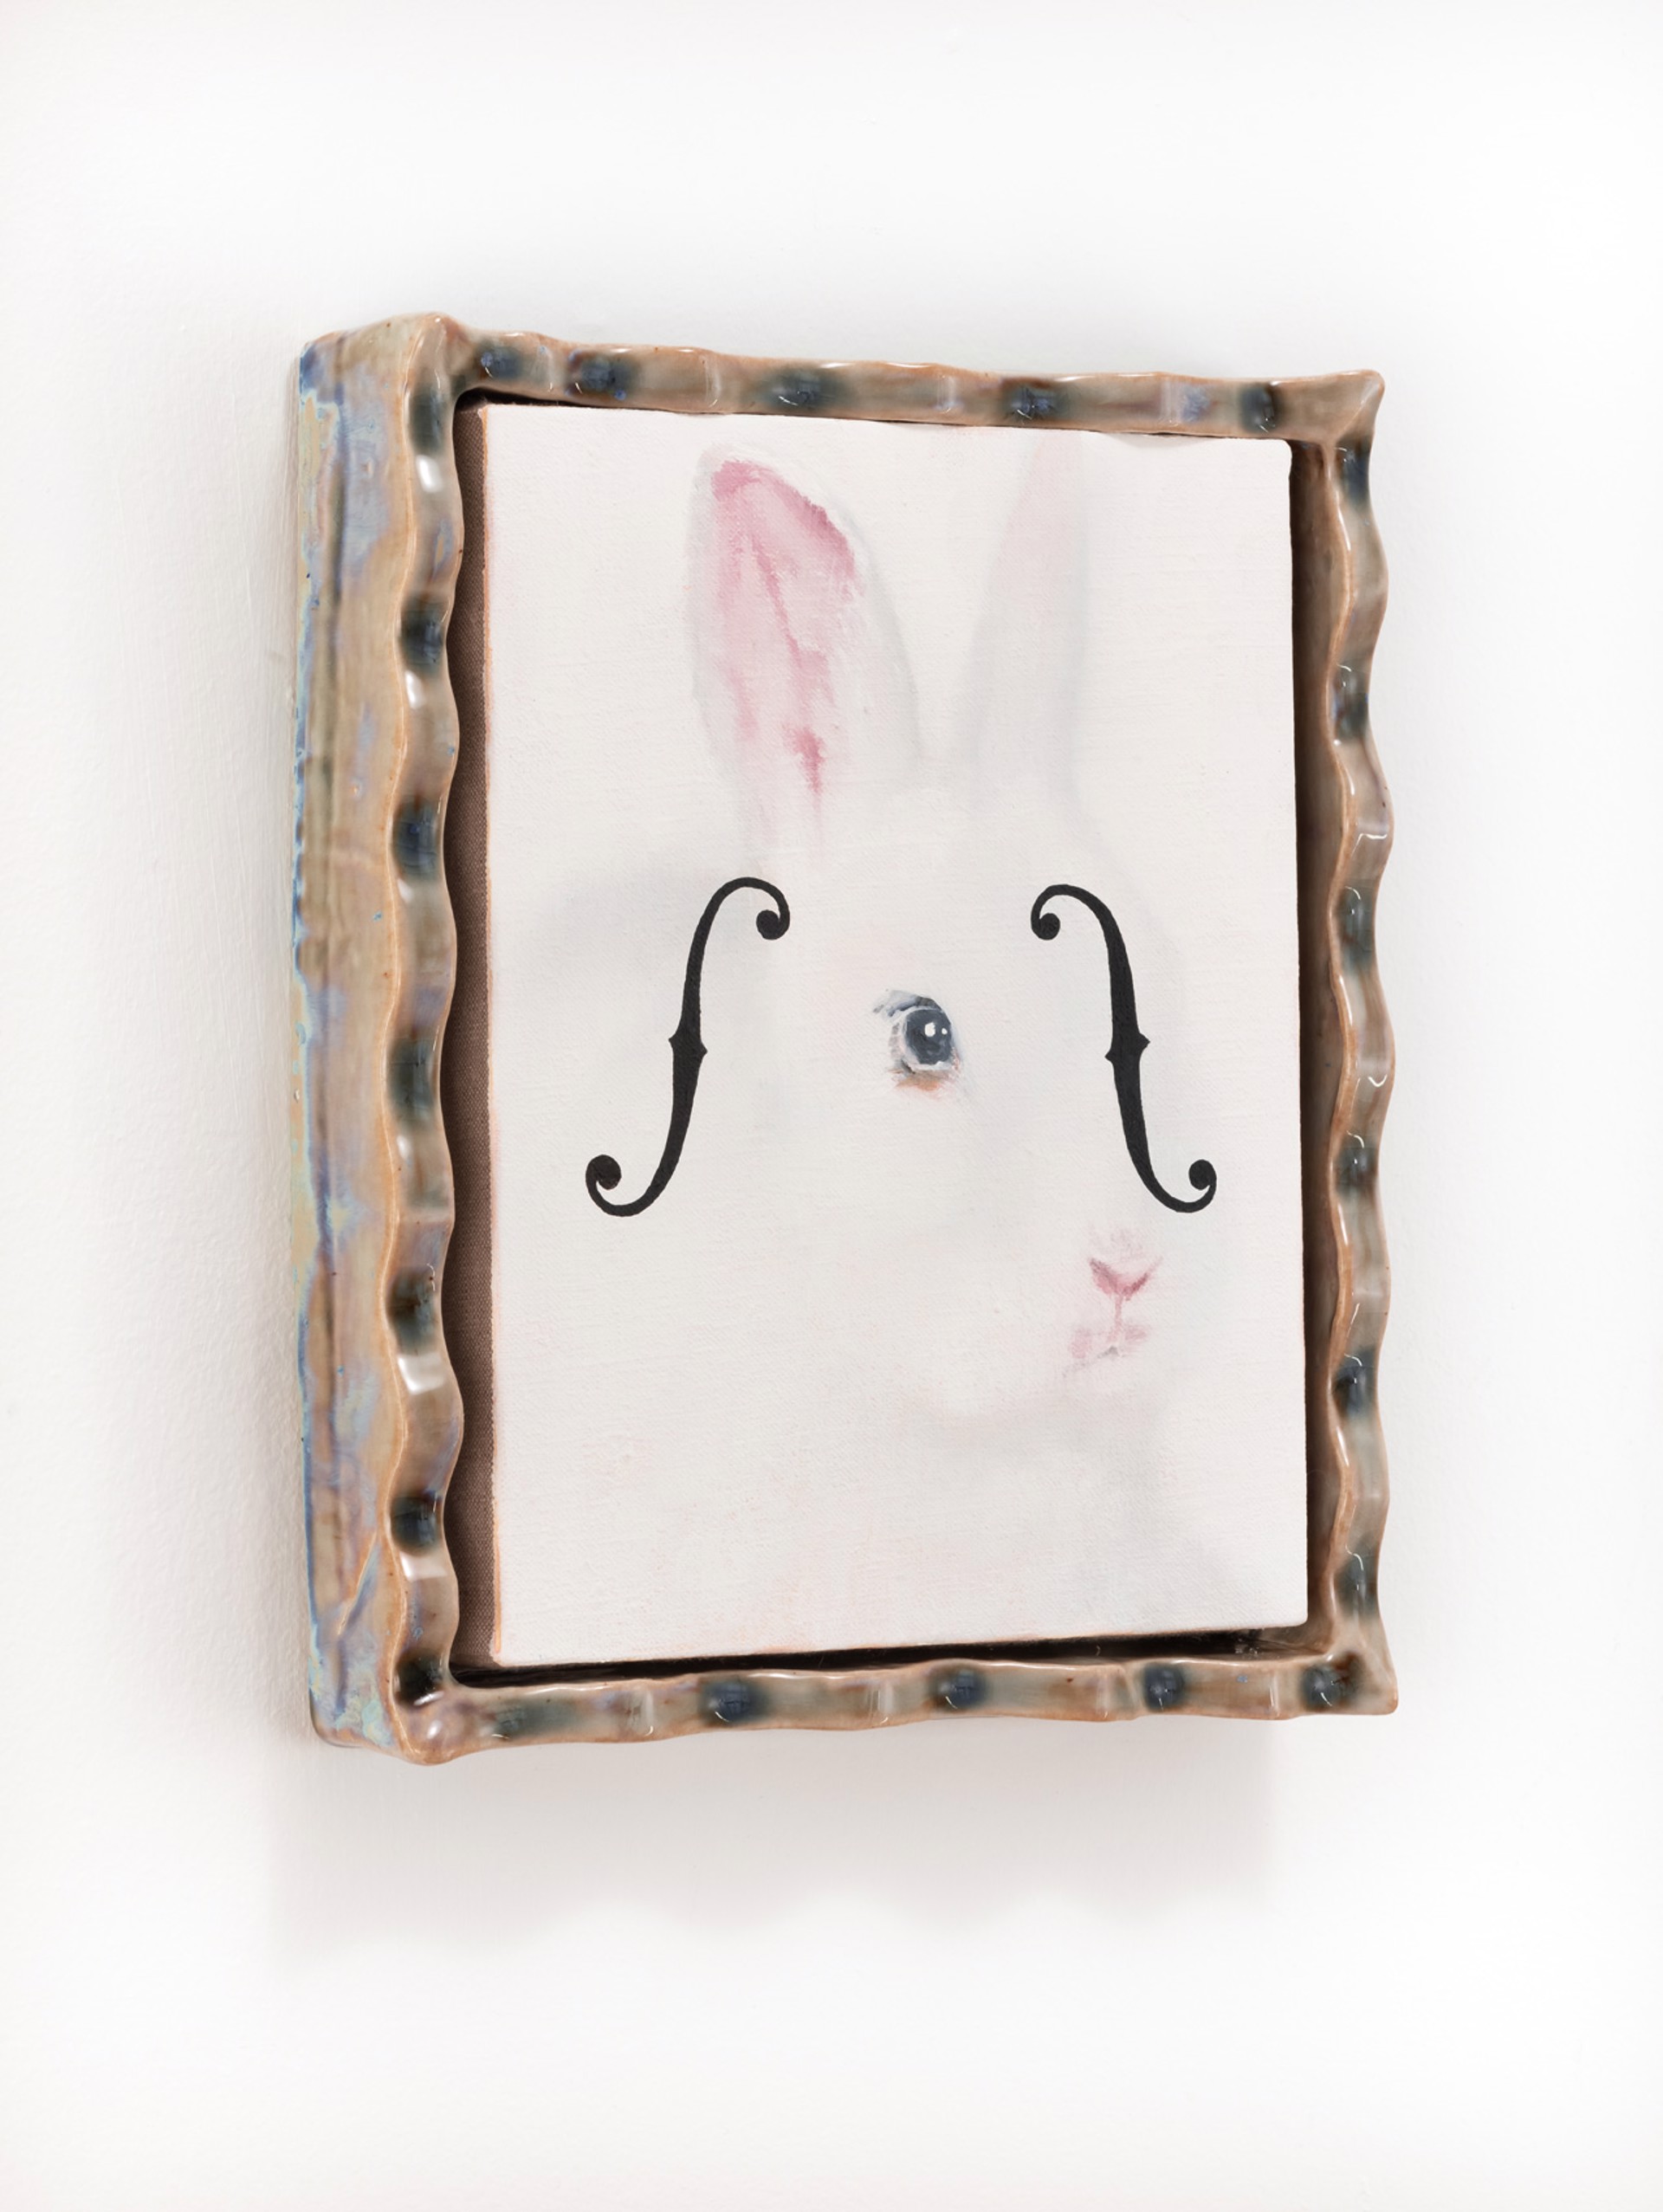 White Rabbit by Emily Weiner